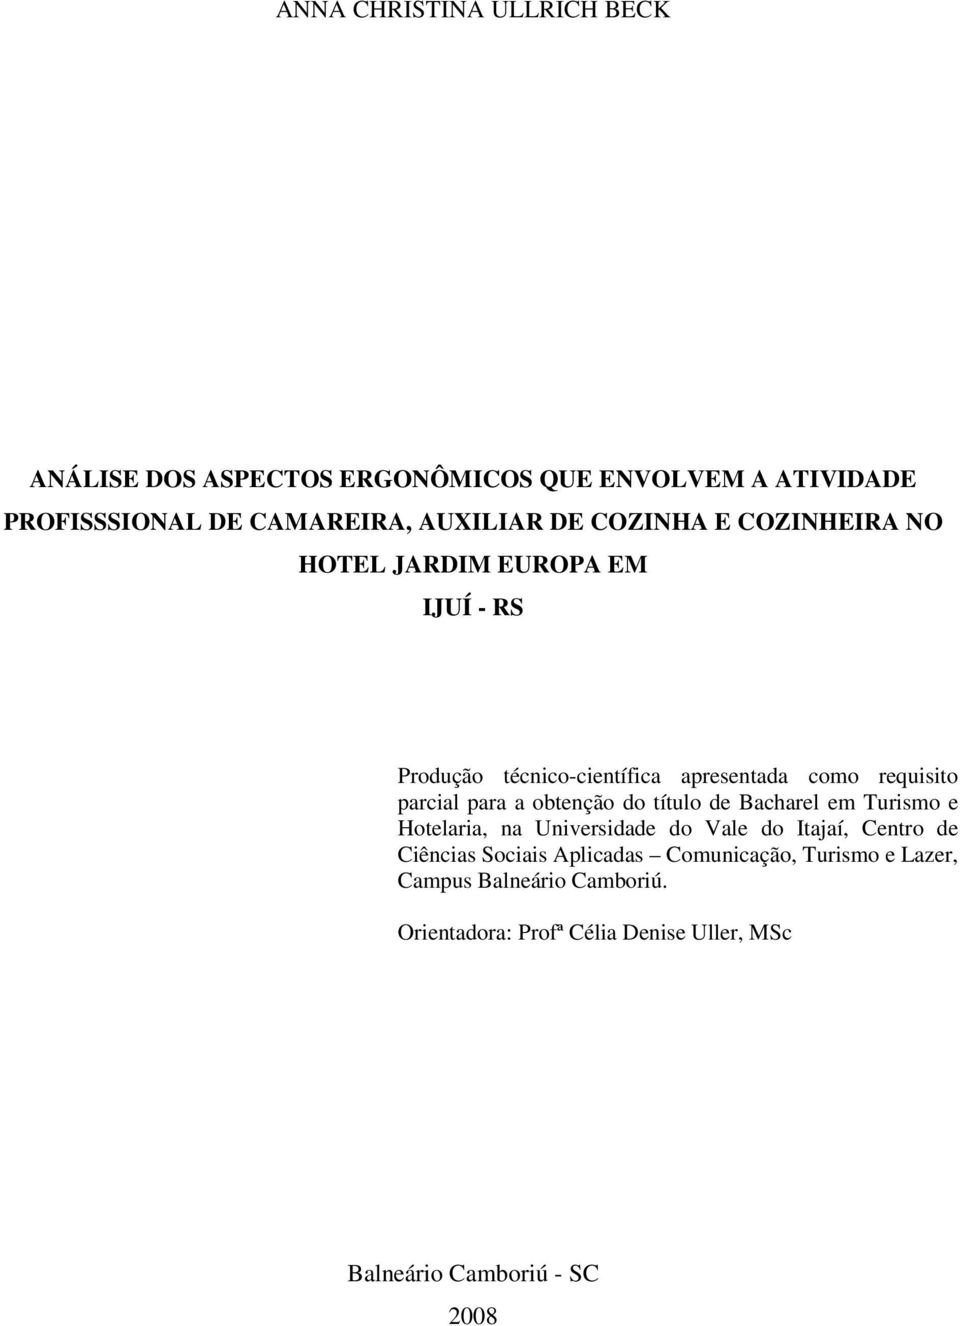 obtenção do título de Bacharel em Turismo e Hotelaria, na Universidade do Vale do Itajaí, Centro de Ciências Sociais Aplicadas